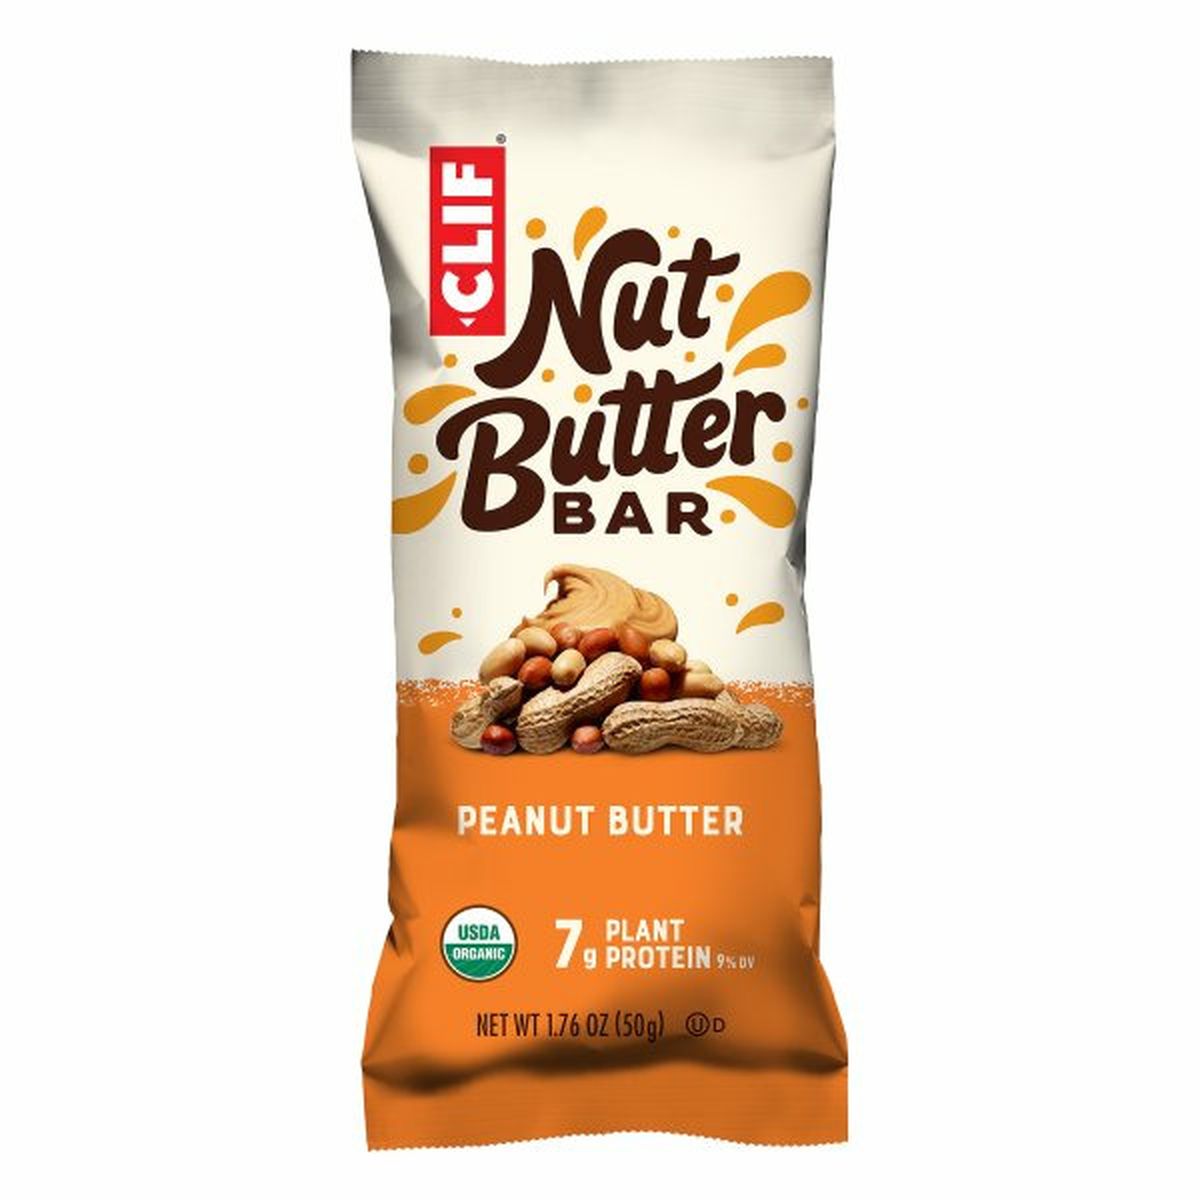 Calories in CLIF BAR Nut Butter Bar, Peanut Butter